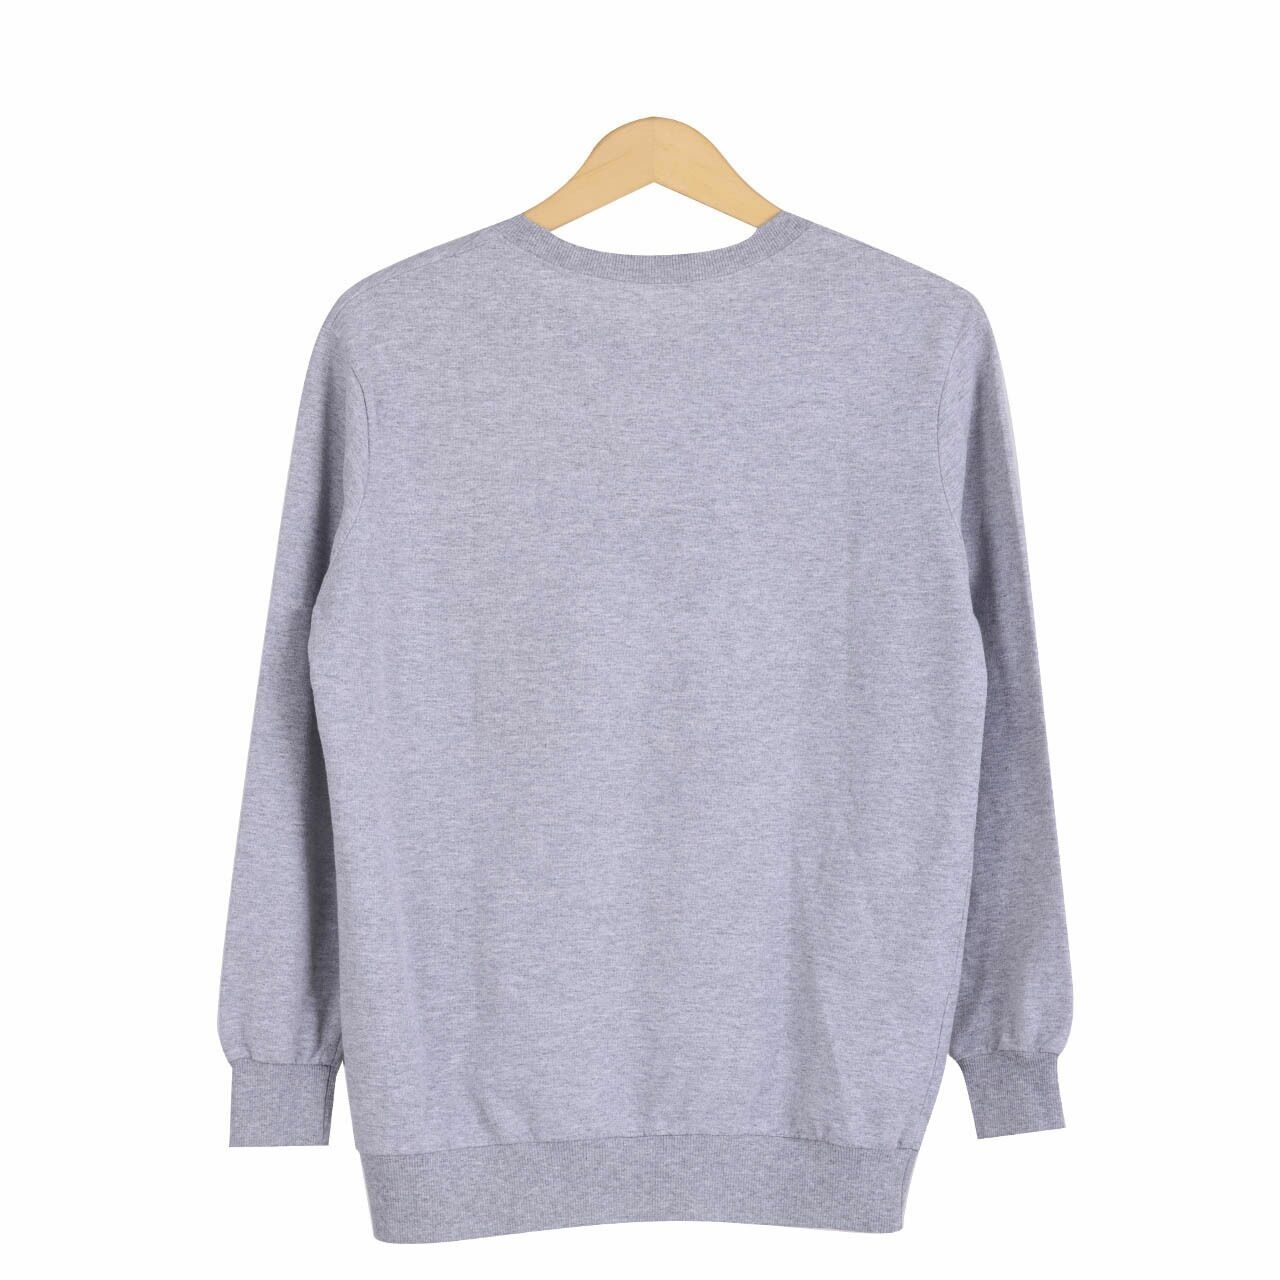 Noisy May x Vero Moda Grey Sweater